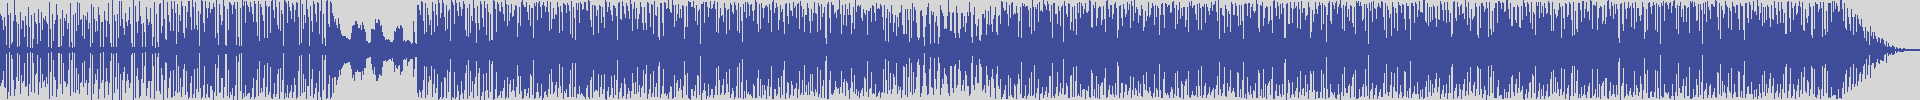 noclouds_chillout [NOC048] Felix Richardson - Hope [Chillout Beatz Mix] audio wave form